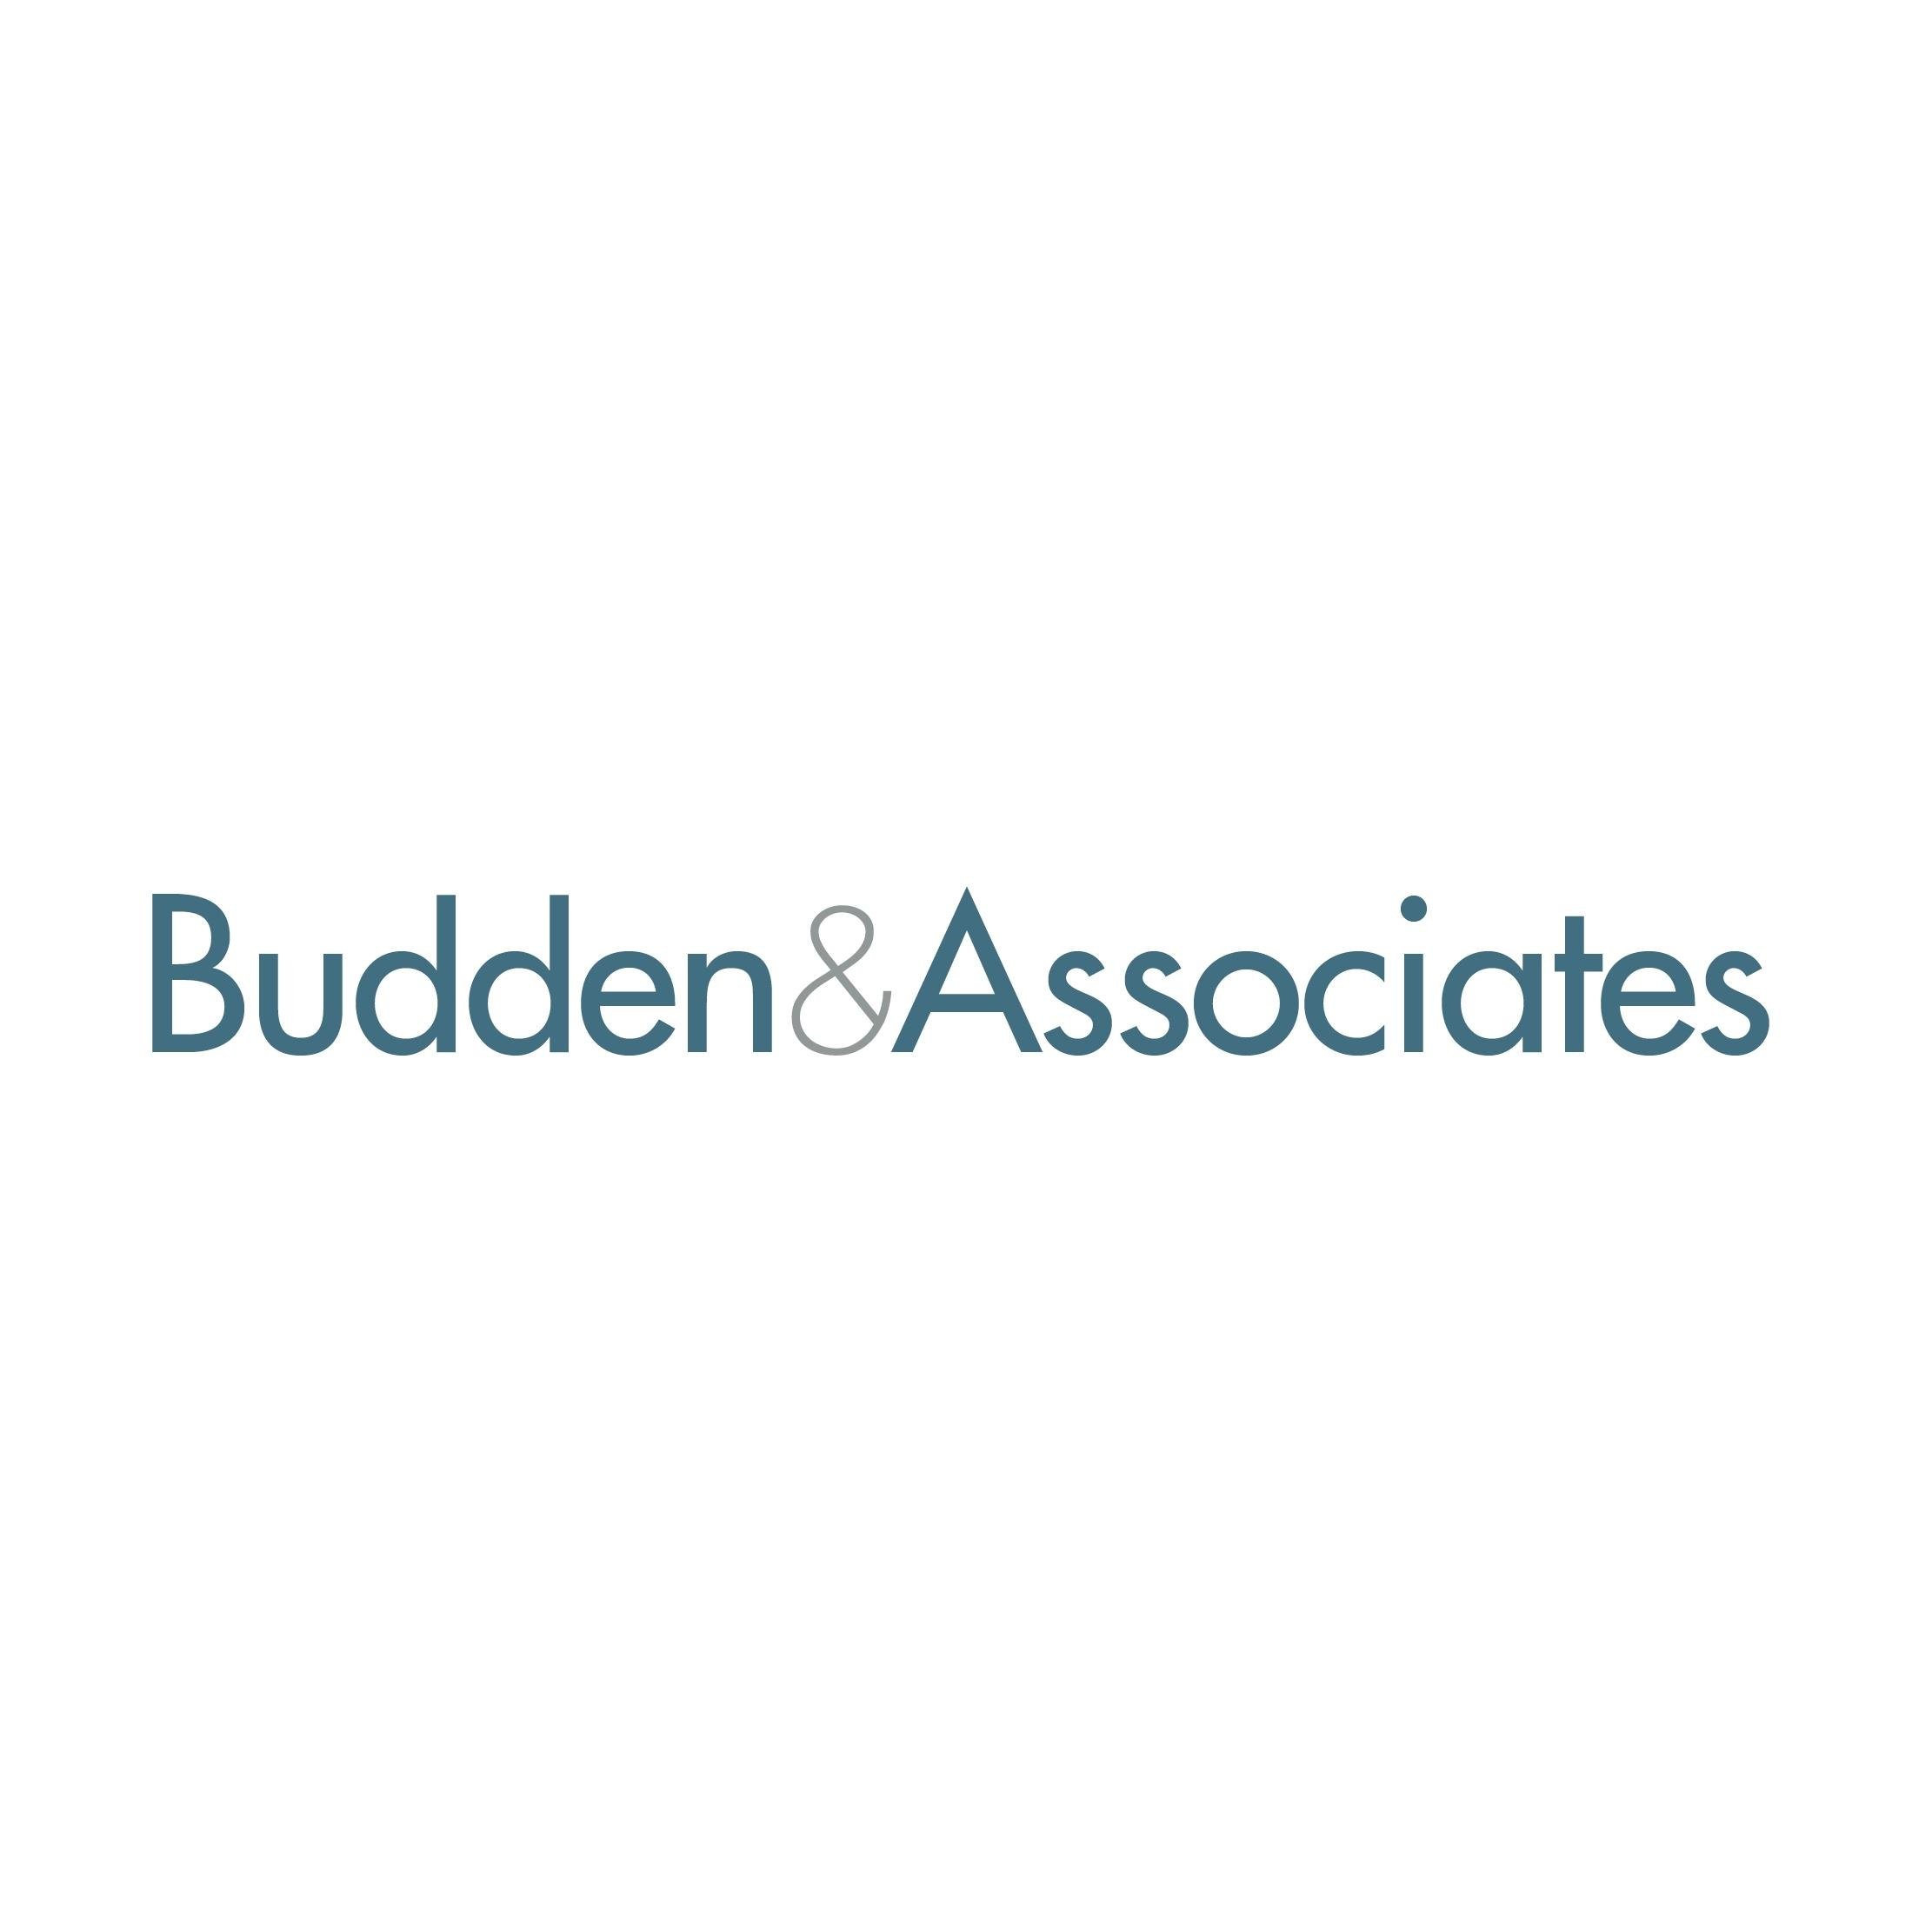 Budden & Associates